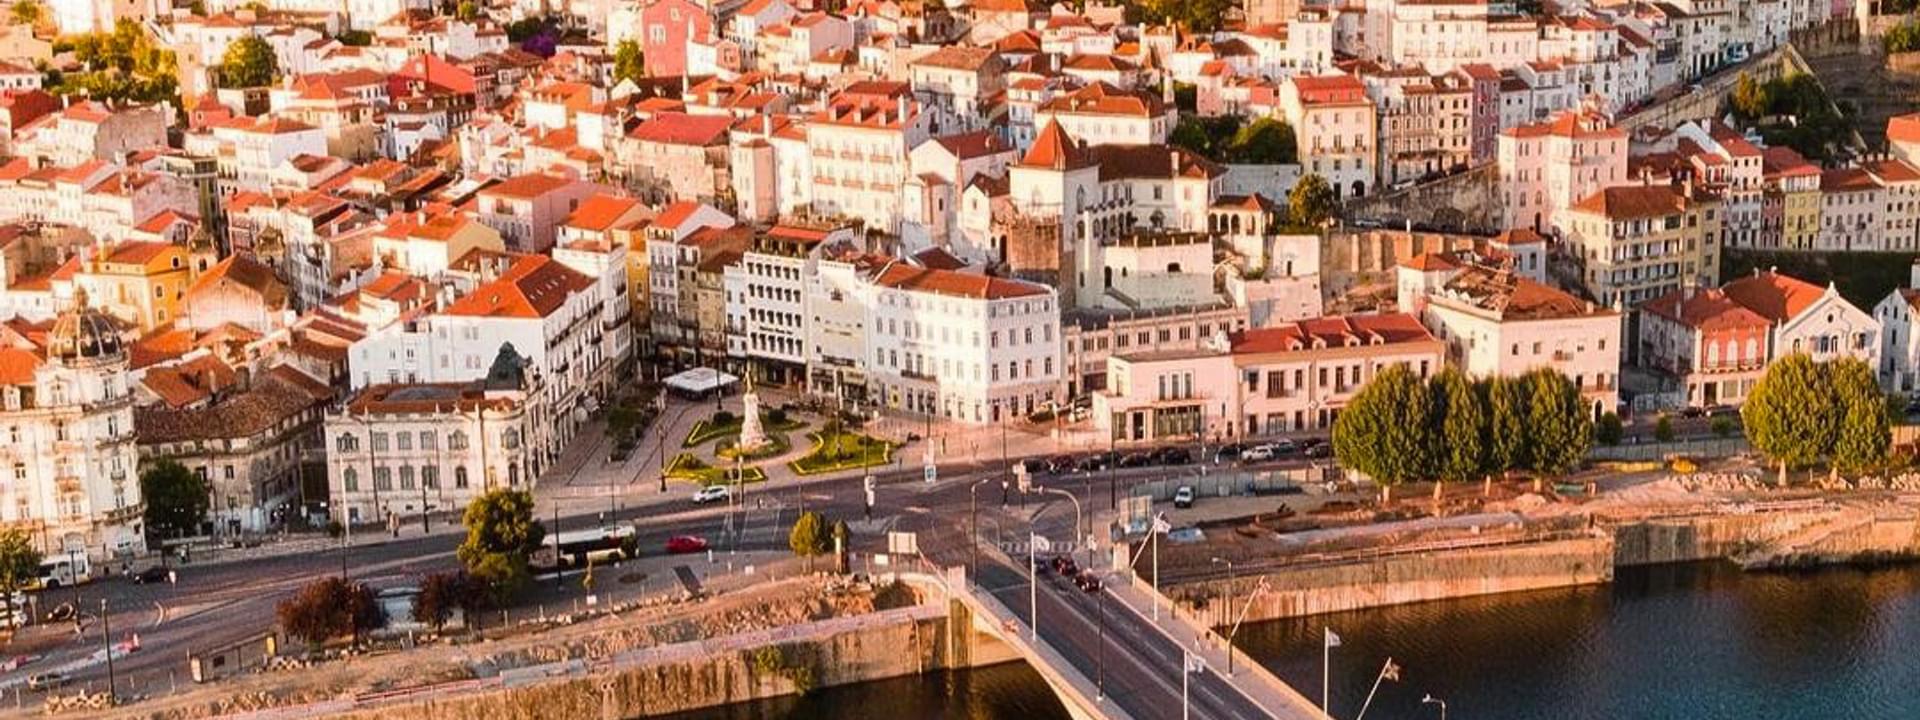 Coimbra a pie: lugares destacados de Coimbra